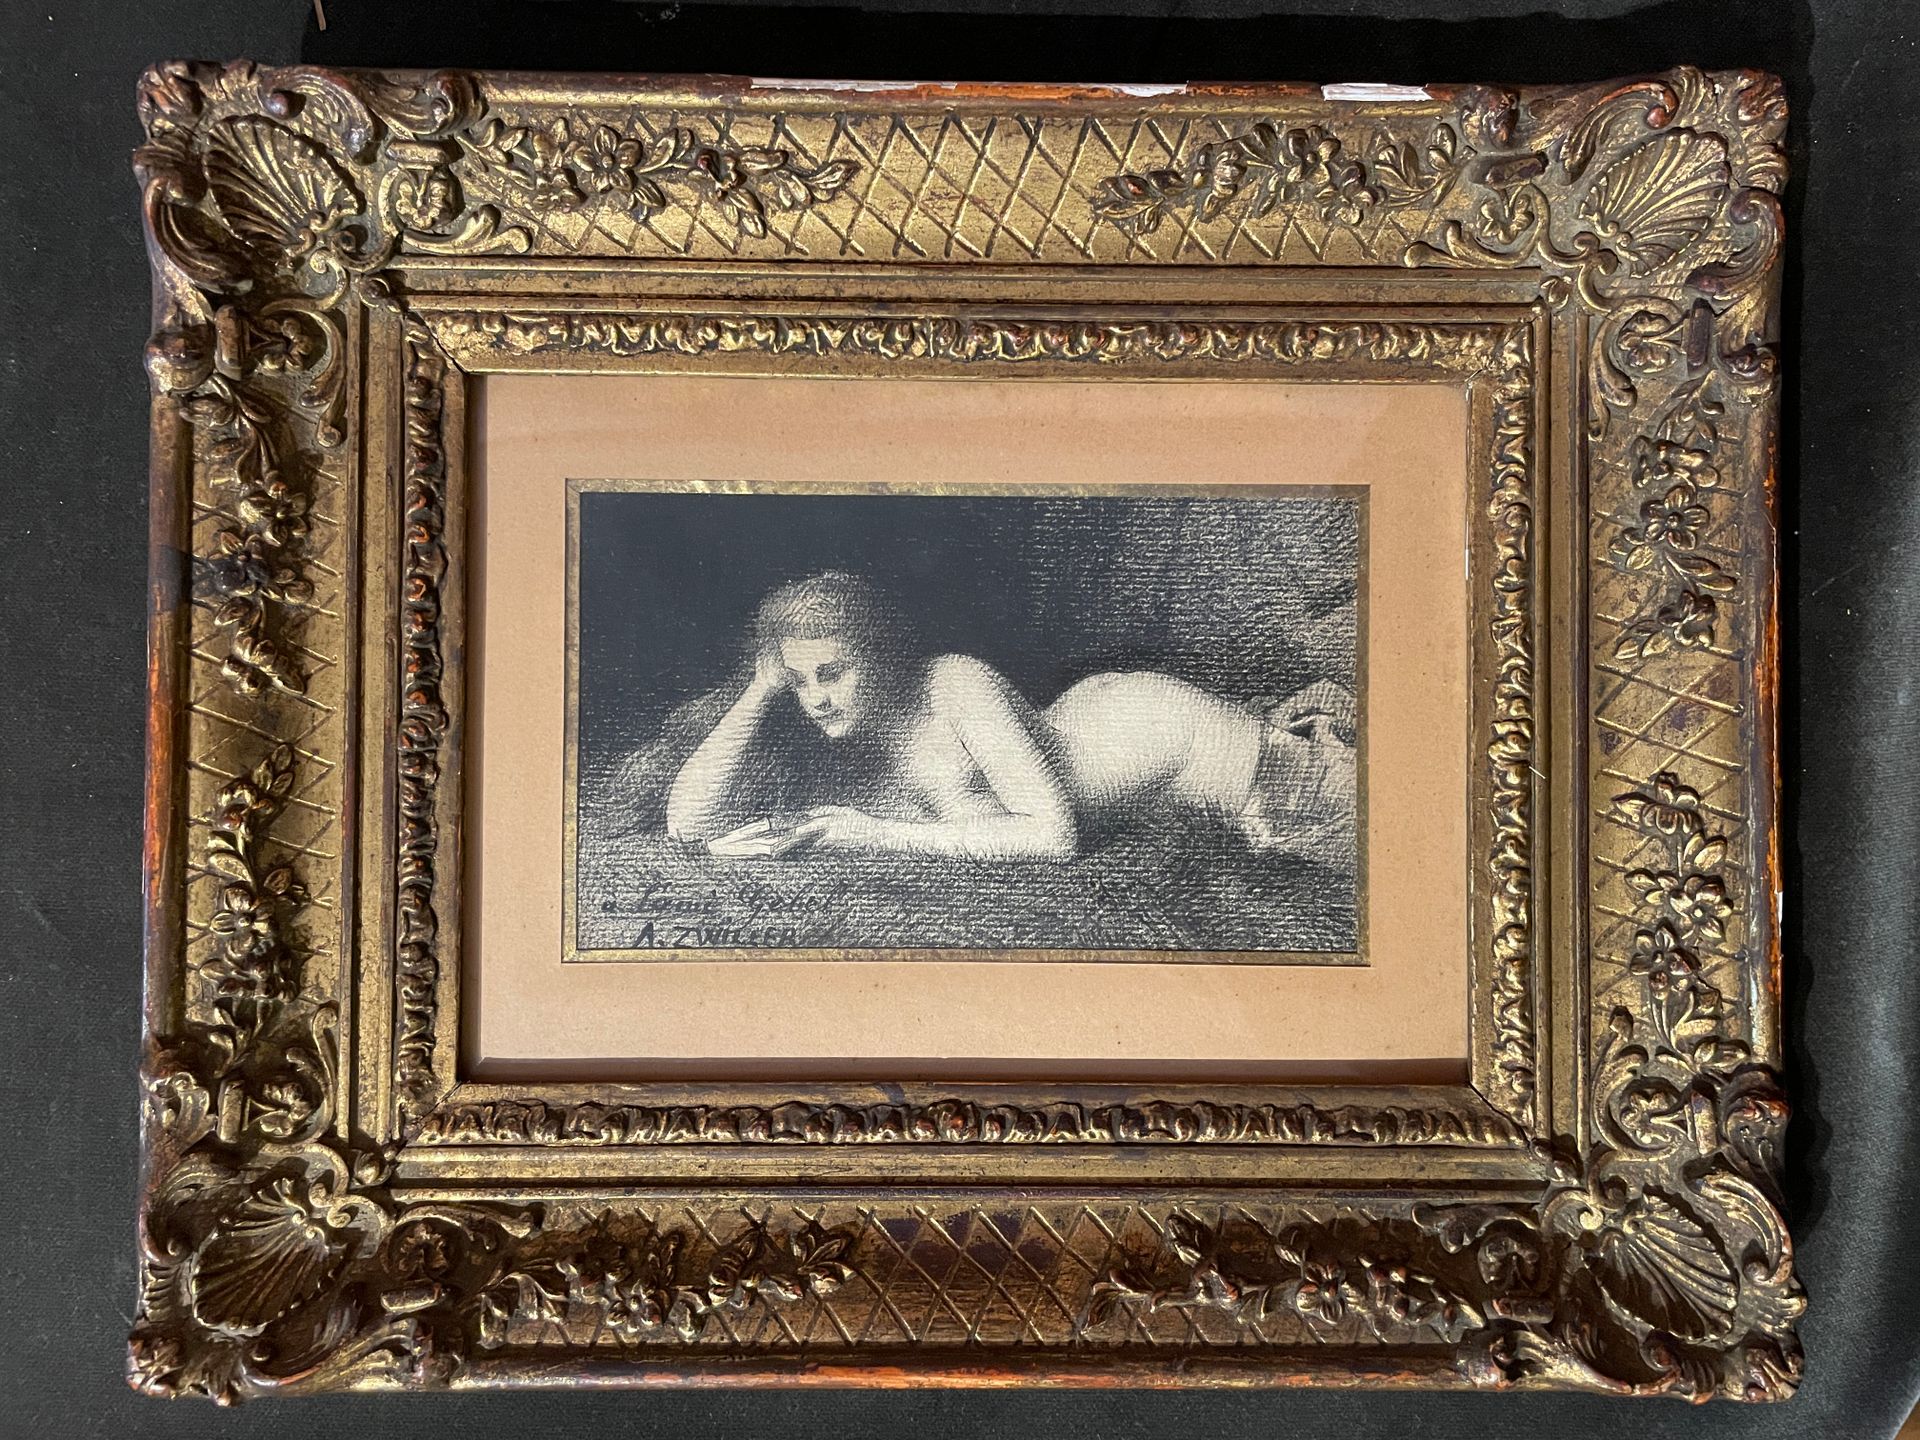 Null 奥古斯丁-茨威勒 (1850 - 1939)

躺着看书的年轻女子

炭质

9.5 x 16.5 厘米

左下角有签名和献词 "致朋友Gebel